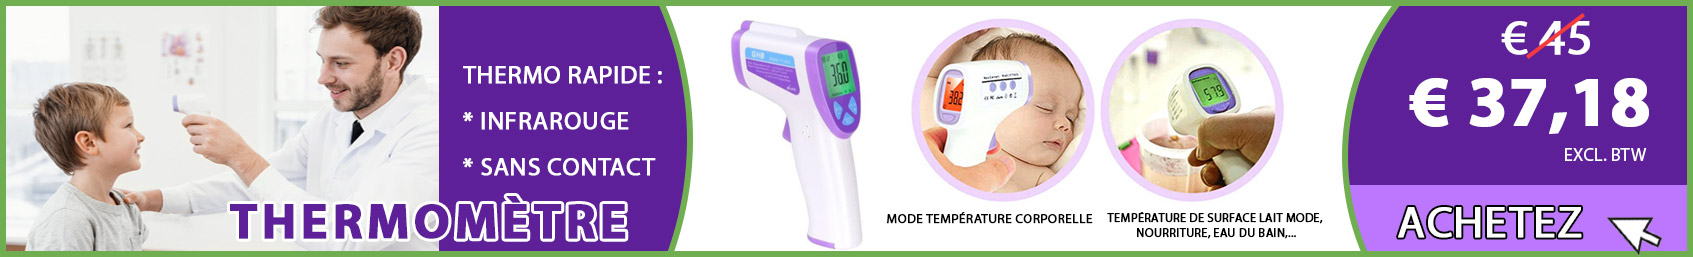 Thermometre